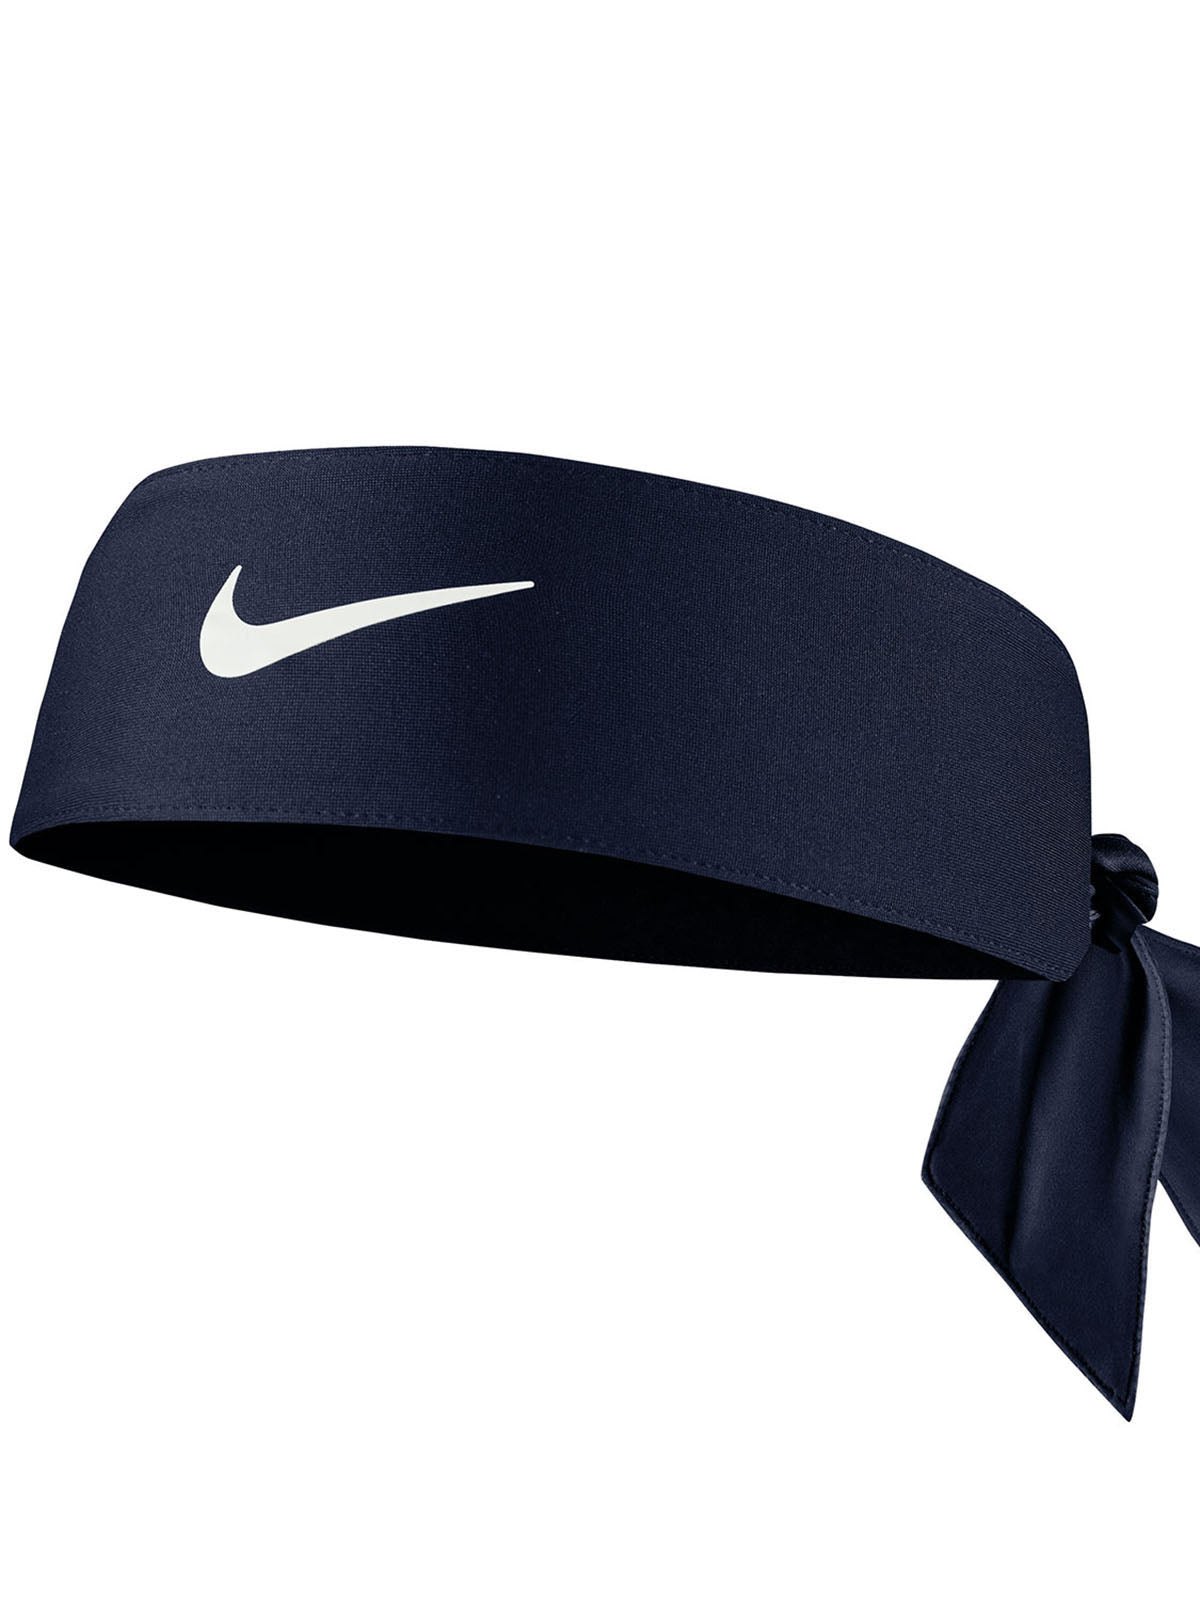 Fasce Unisex Nike - Dri-Fit Head Tie - Blu